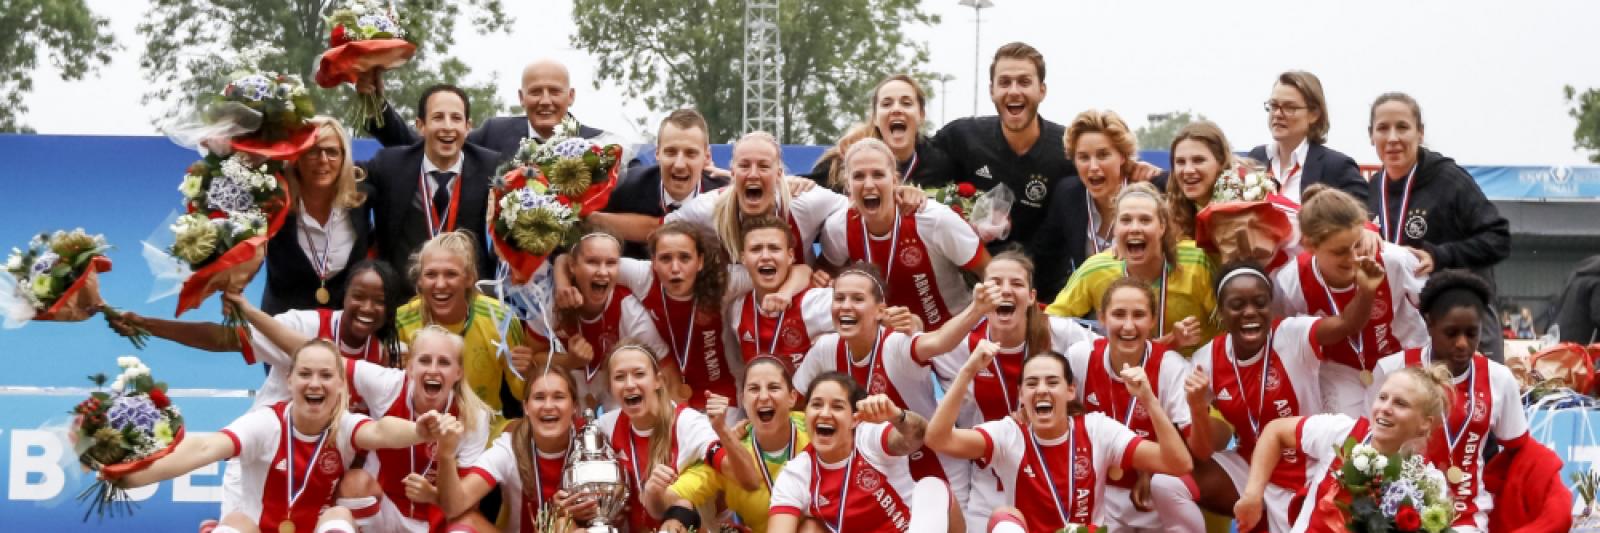 Ajax vrouwen winnen bekerfinale van PSV - NH Nieuws